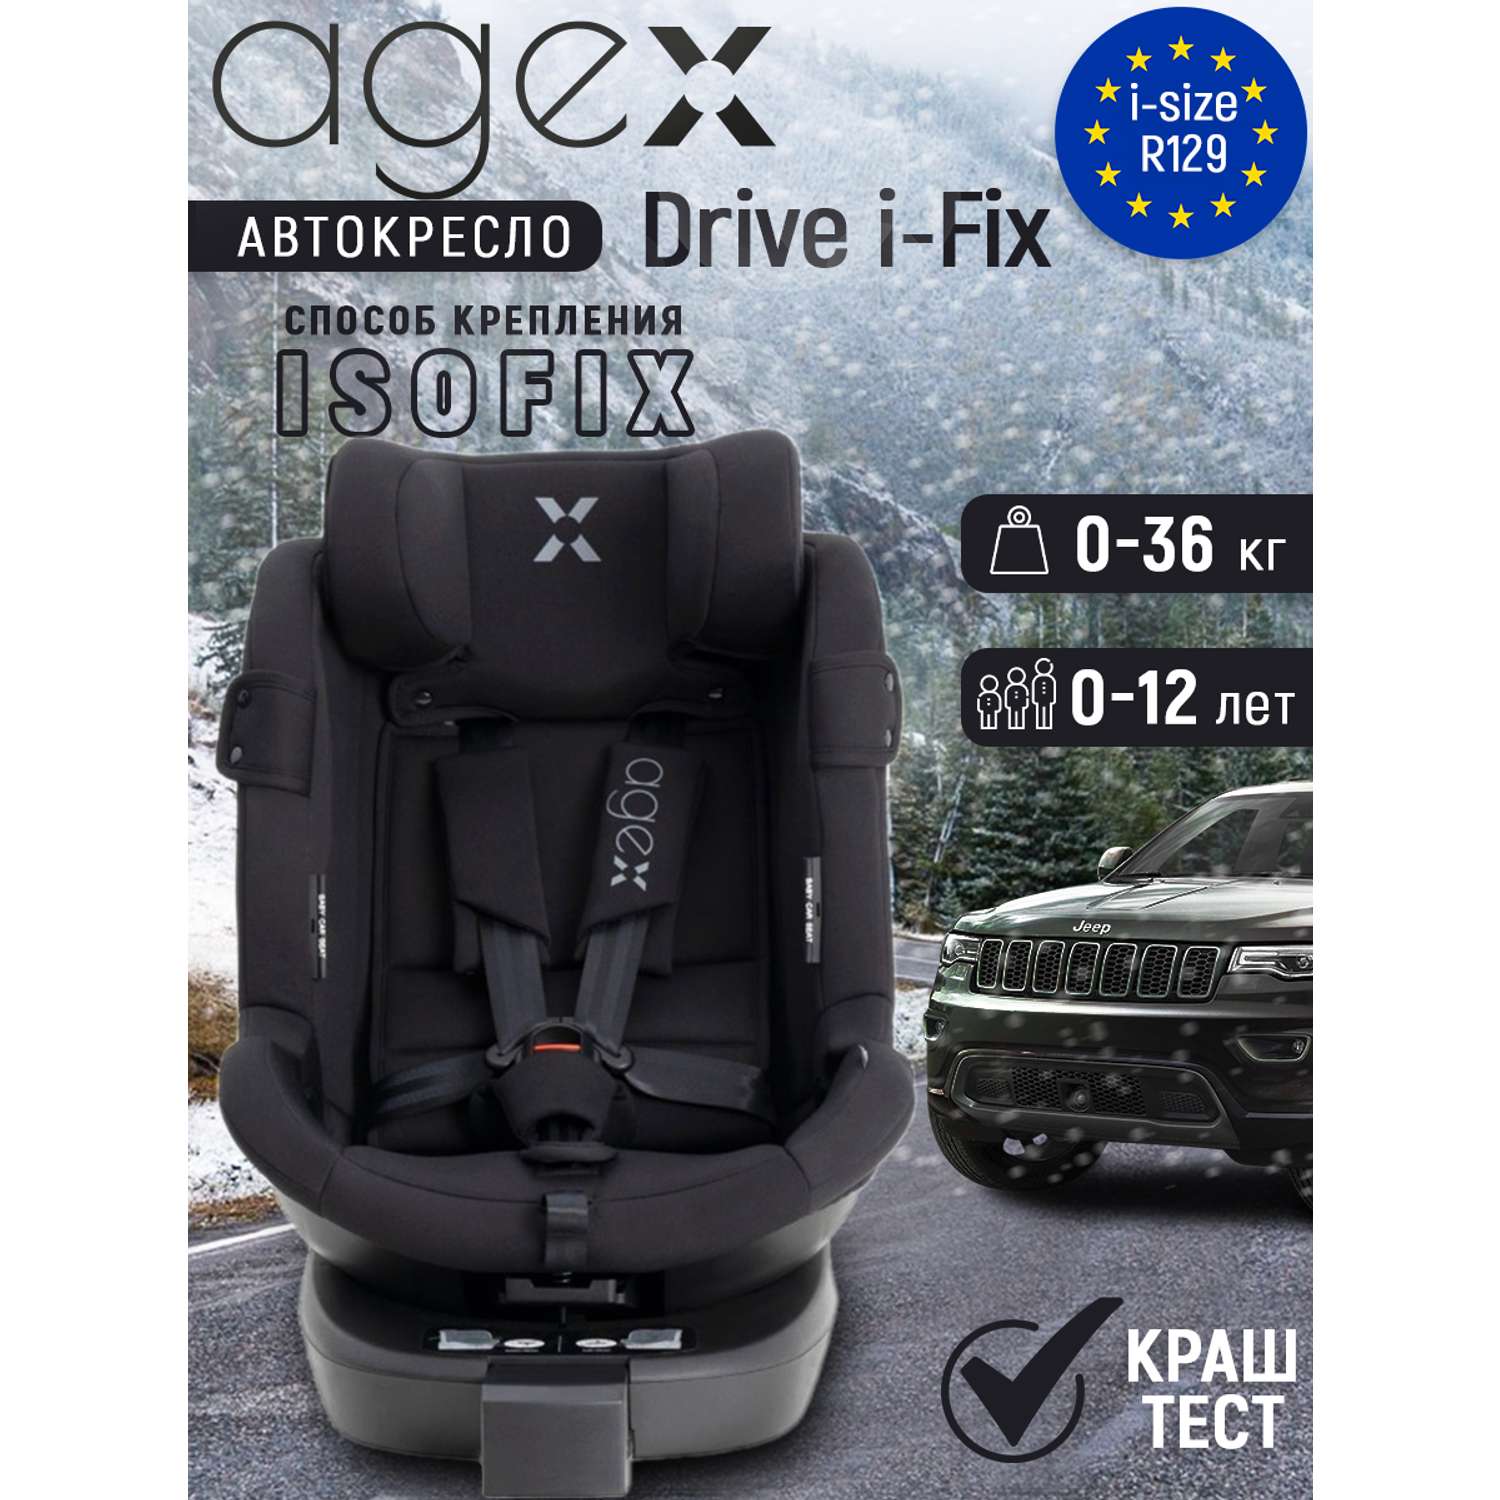 Автокресло agex Drive i-Fix - фото 1